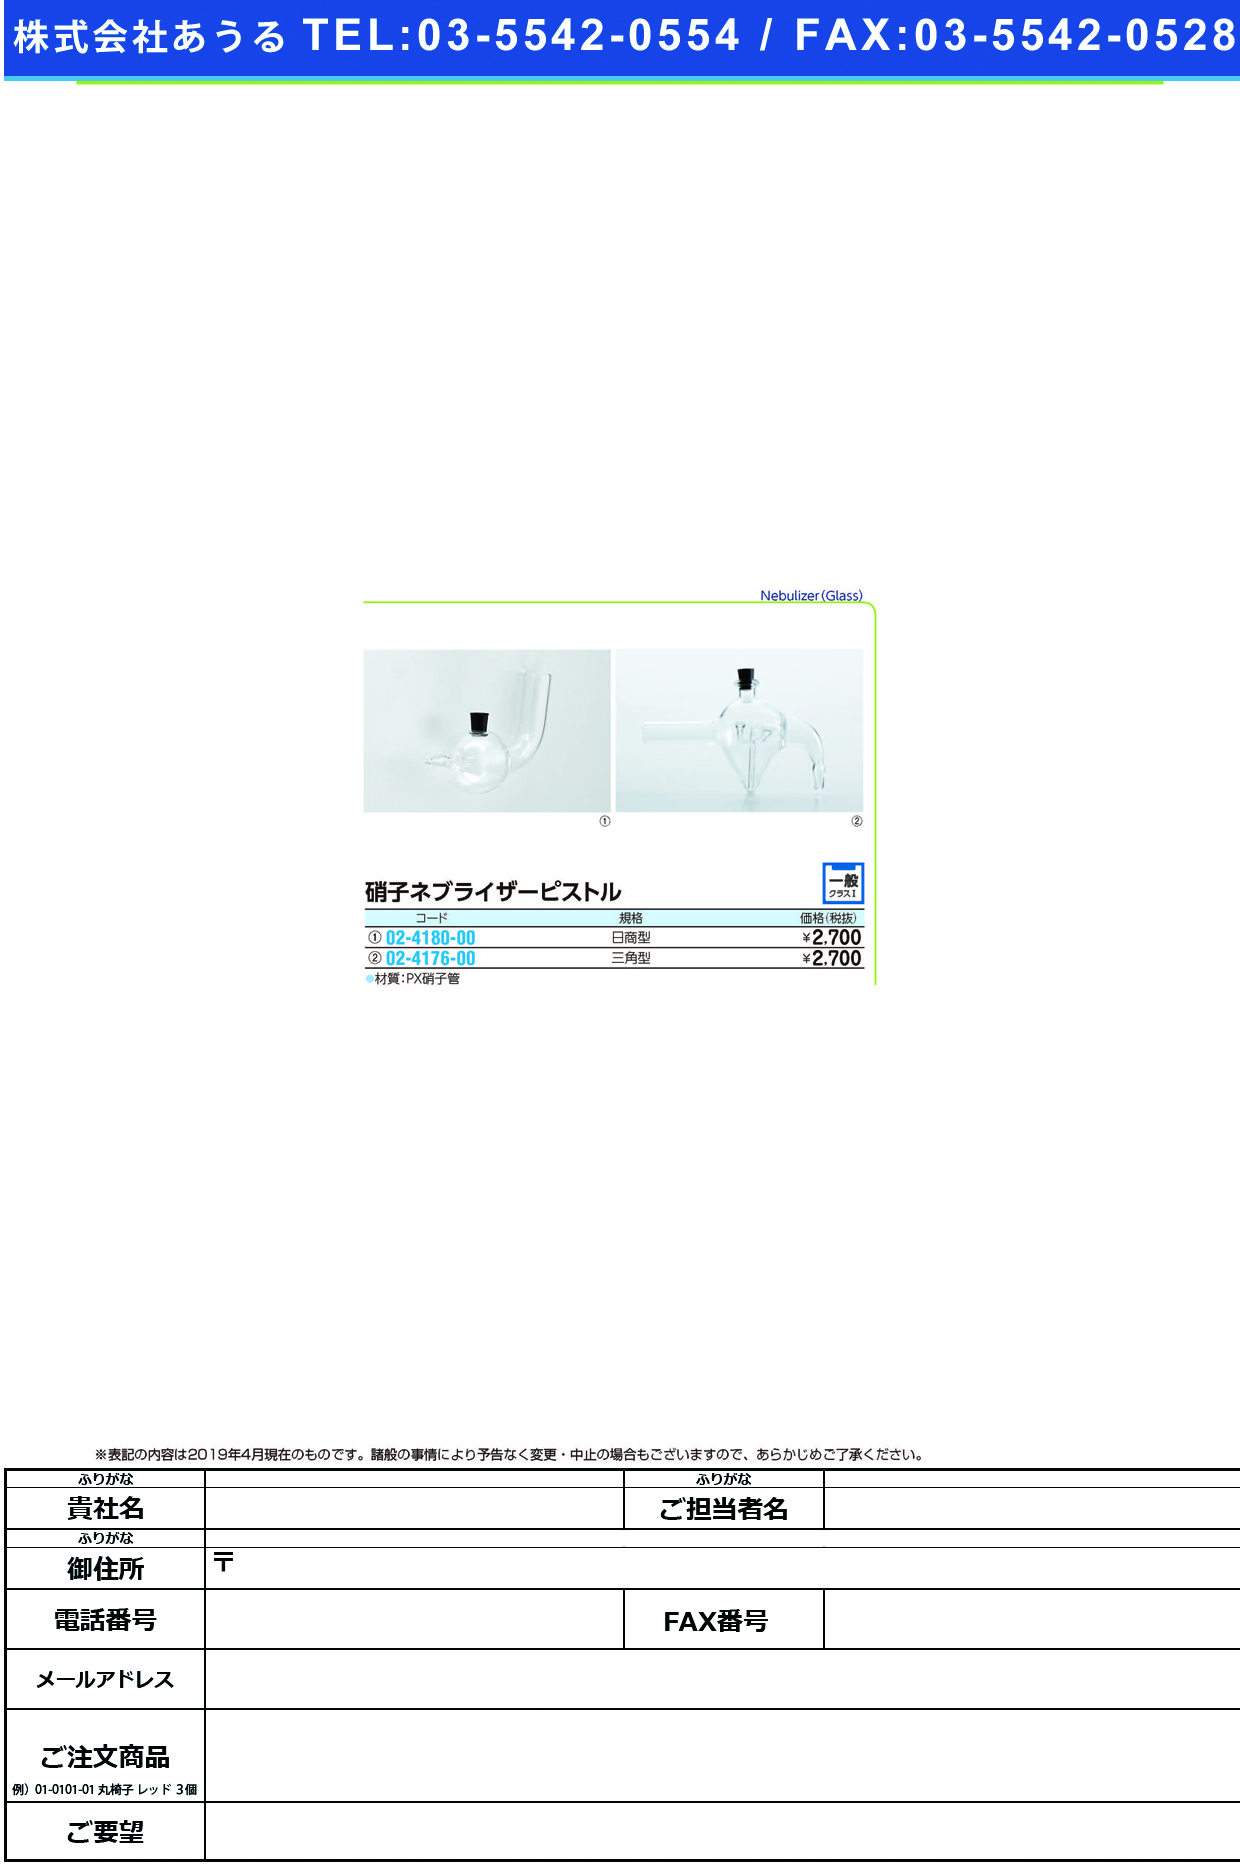 (02-4176-00)硝子ネブライザーピストル（三角型）  ｶﾞﾗｽﾈﾌﾞﾗｲｻﾞｰﾋﾟｽﾄﾙ(ｻﾝ【1個単位】【2019年カタログ商品】